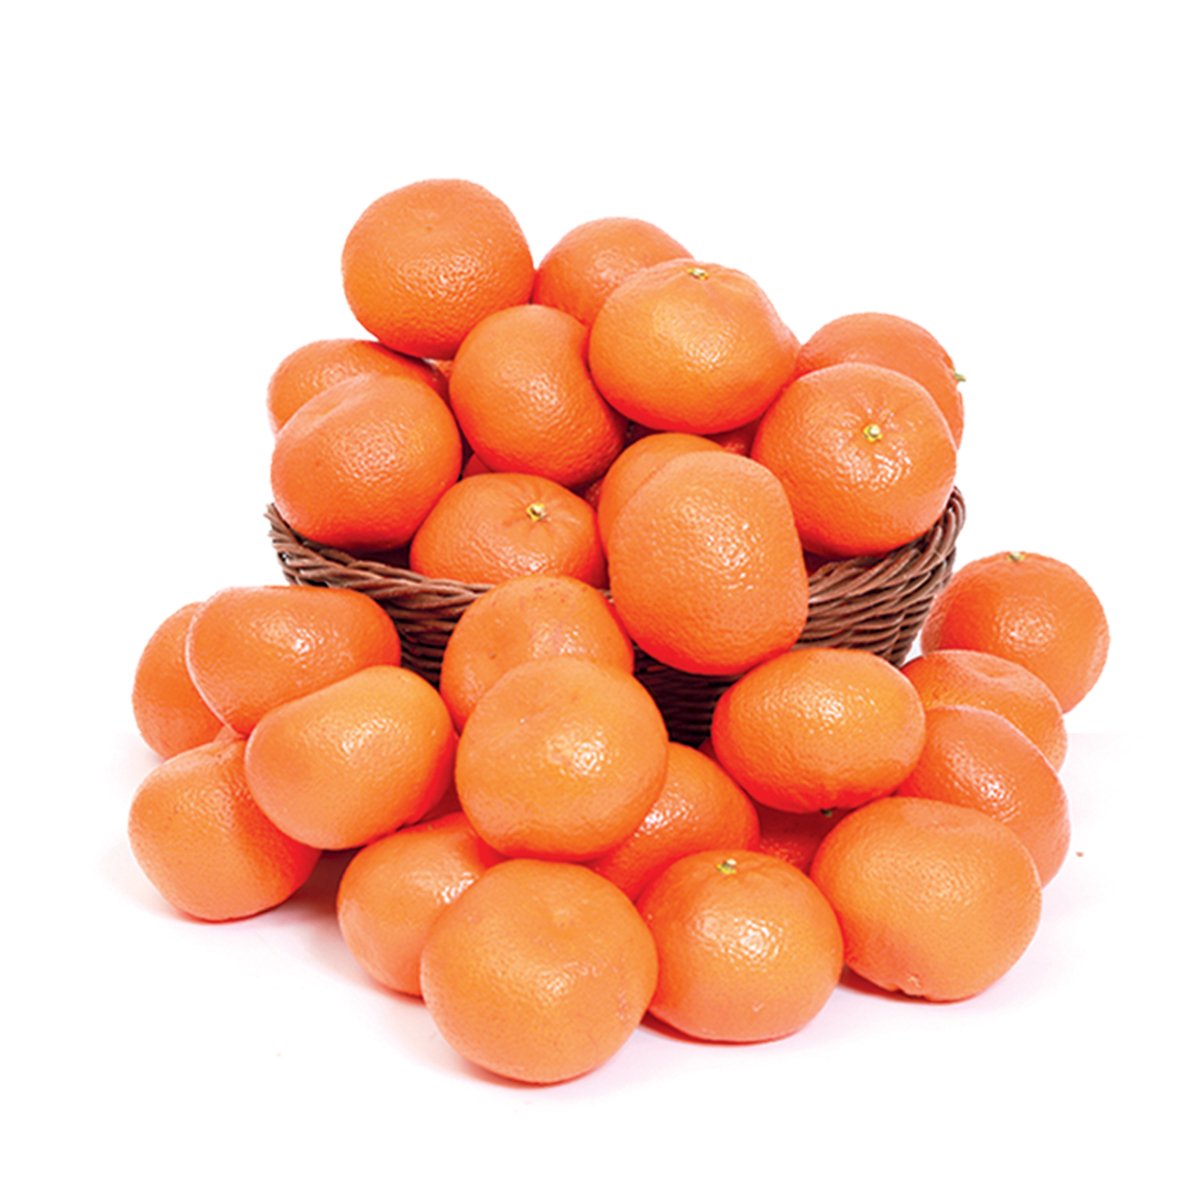 اشتري قم بشراء Nadorcott Mandarin Morocco 1 kg Online at Best Price من الموقع - من لولو هايبر ماركت Citrus Fruits في السعودية